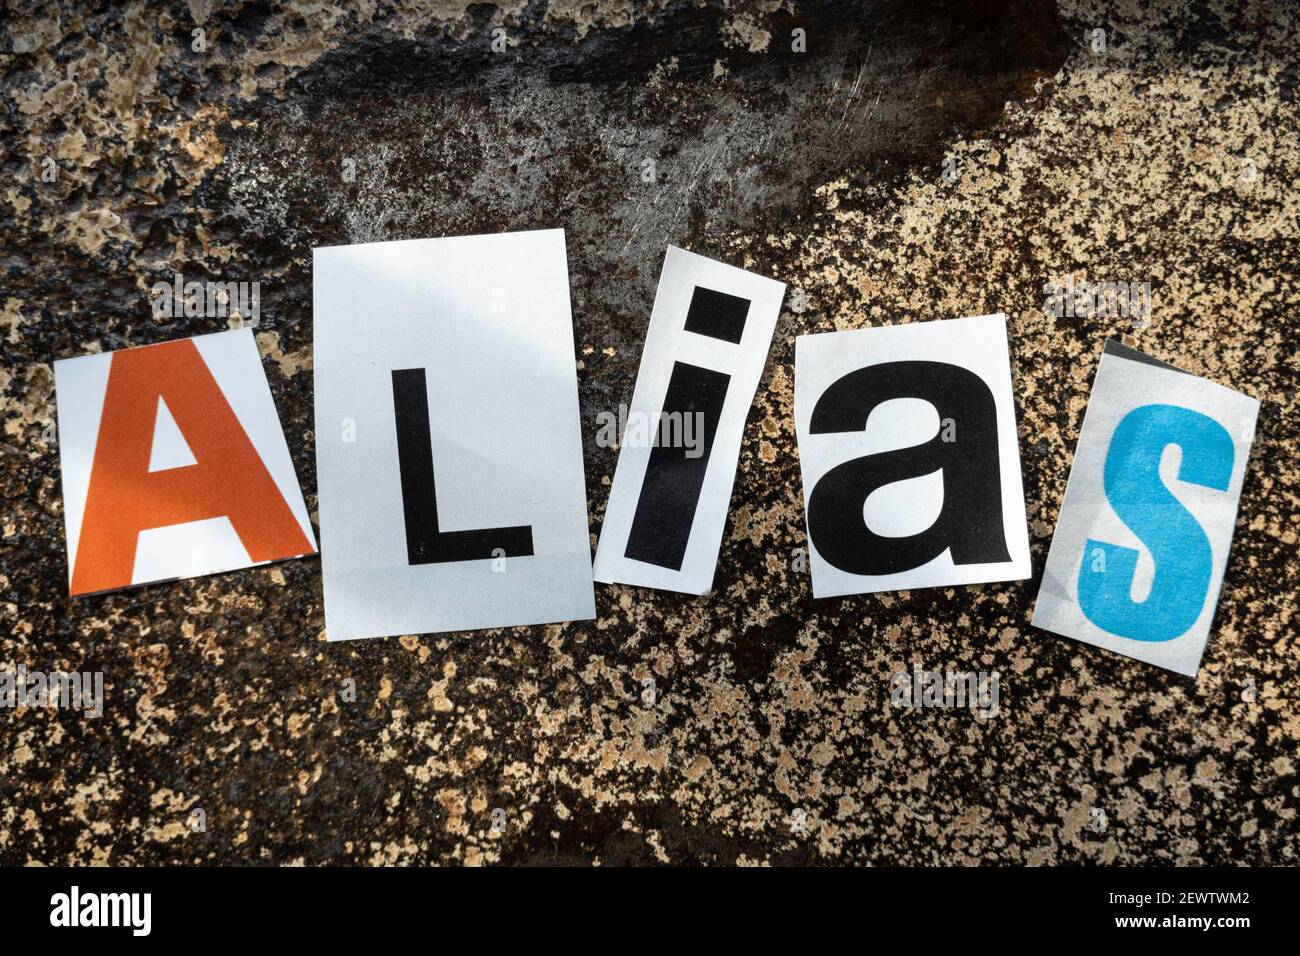 Das Wort 'ALIAS' mit ausgeschnittenen Papierbuchstaben in der Lösegeld Note  Effekt Typografie, USA Stockfotografie - Alamy